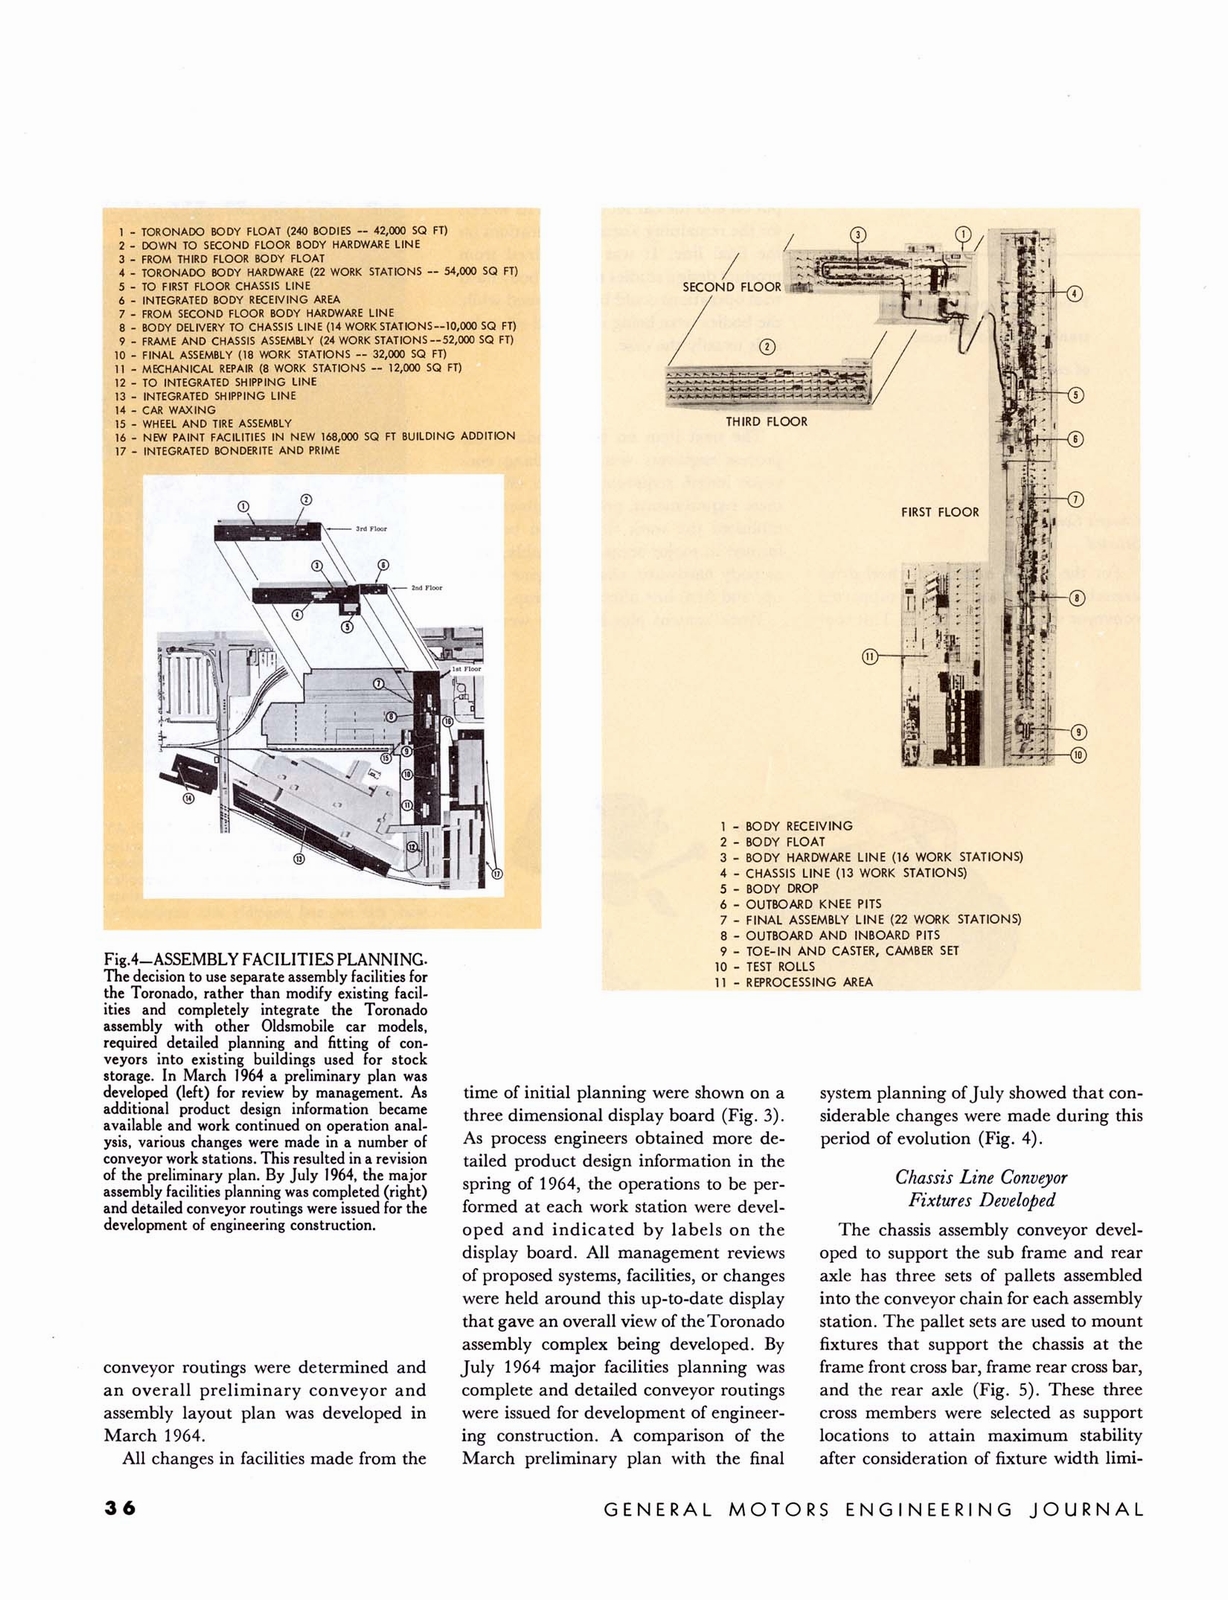 n_1966 GM Eng Journal Qtr2-36.jpg